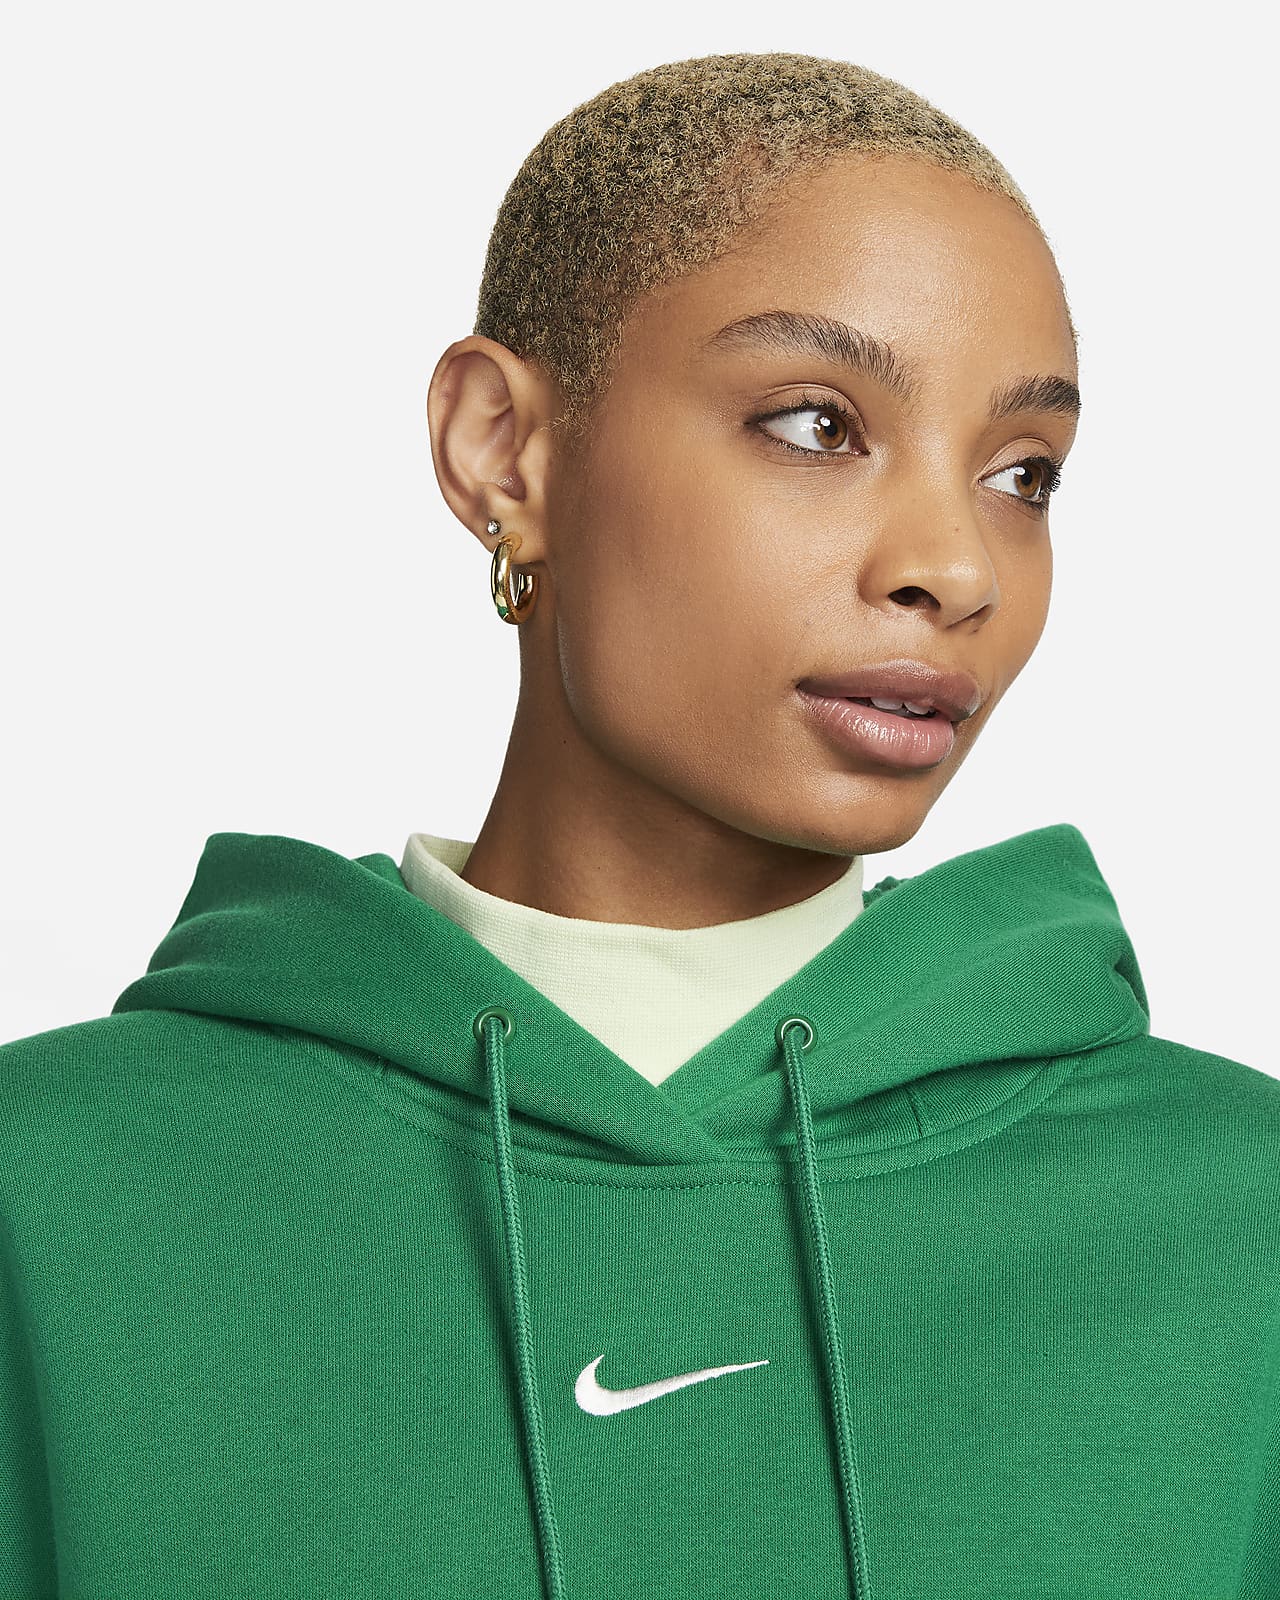 Women's Nike Sportswear Phoenix Fleece Oversized Pullover Hoodie